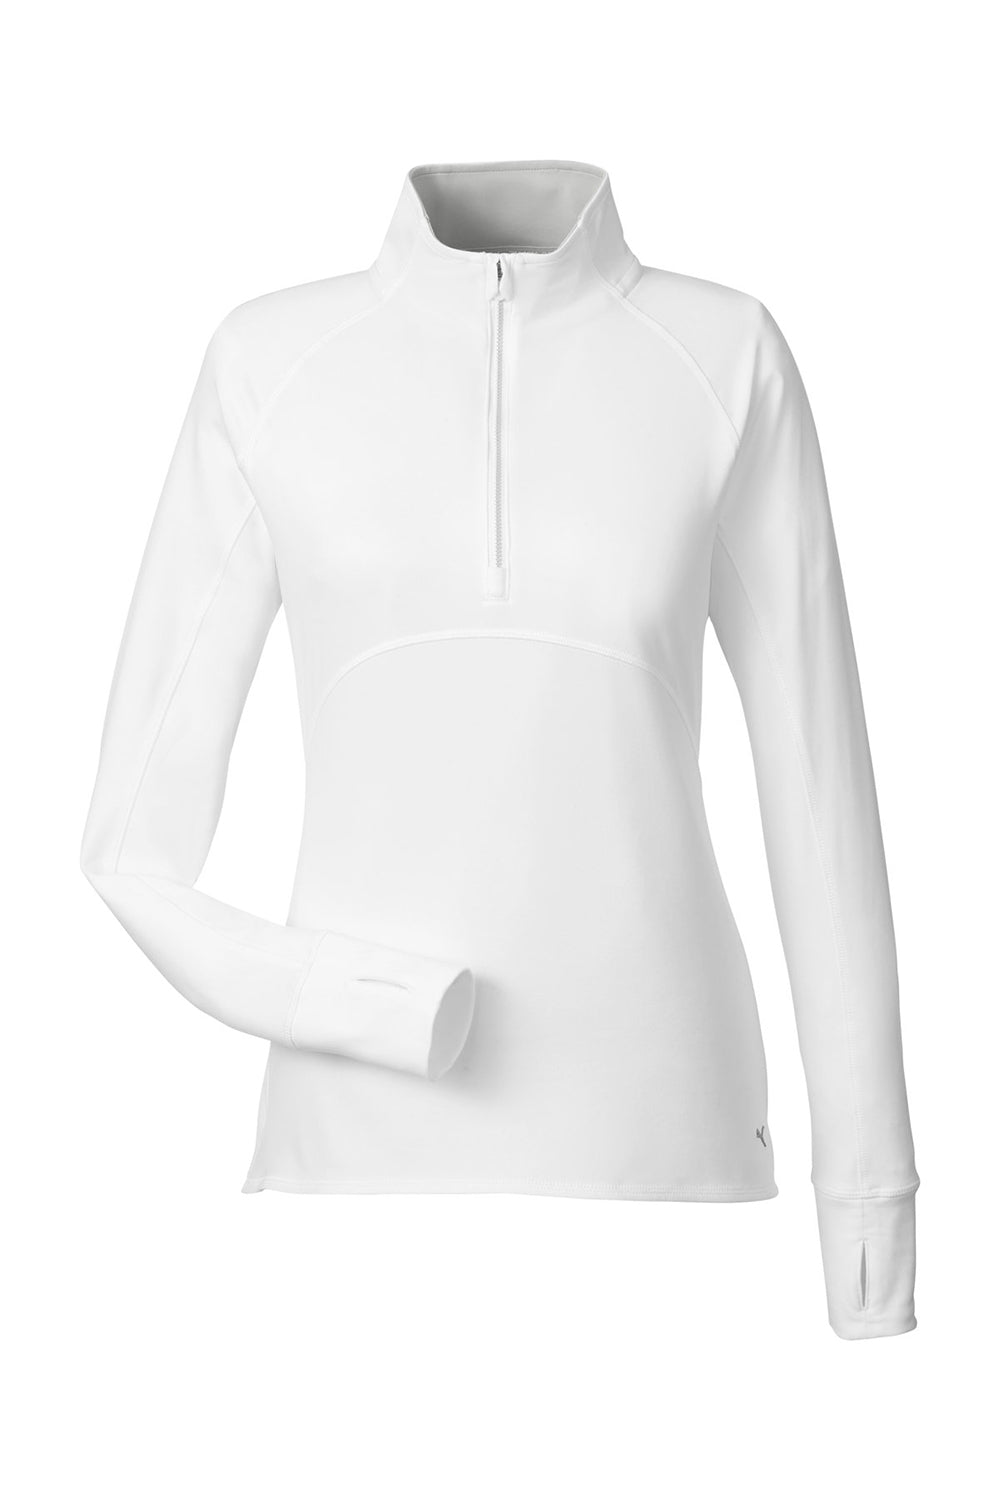 Puma 533007 Womens Gamer 1/4 Zip Sweatshirt Bright White Flat Front